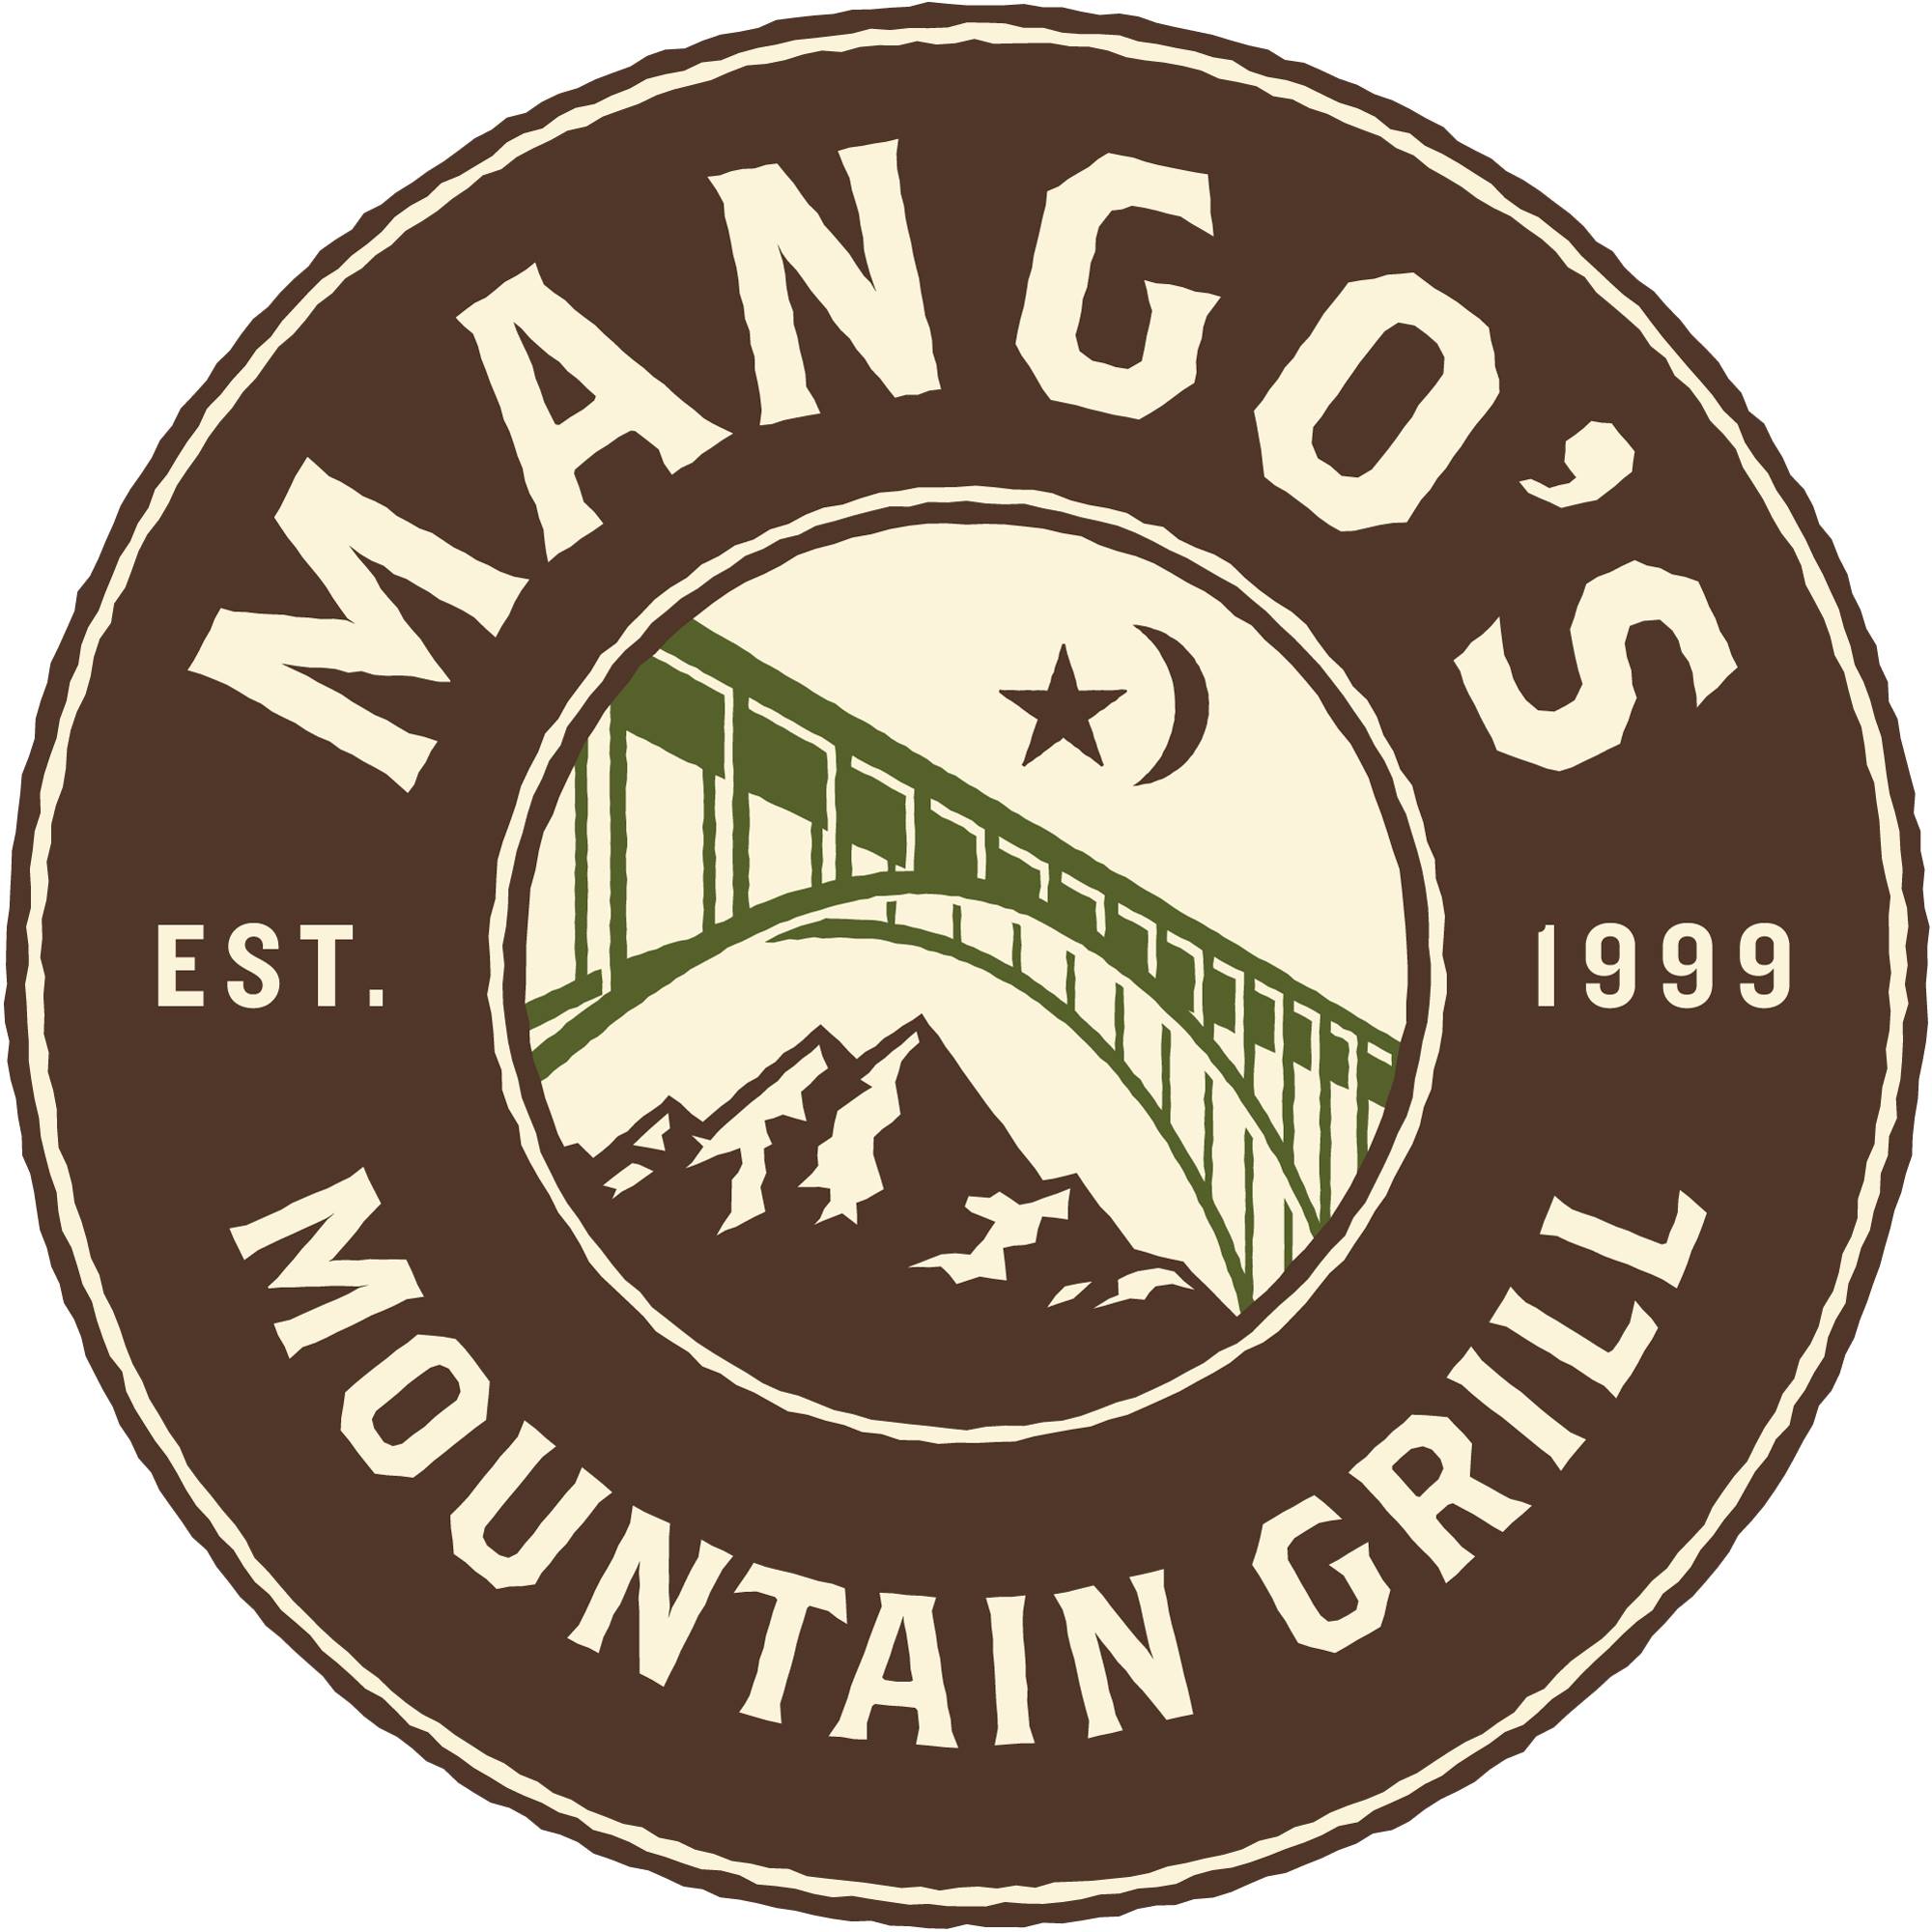 Mangos Logo